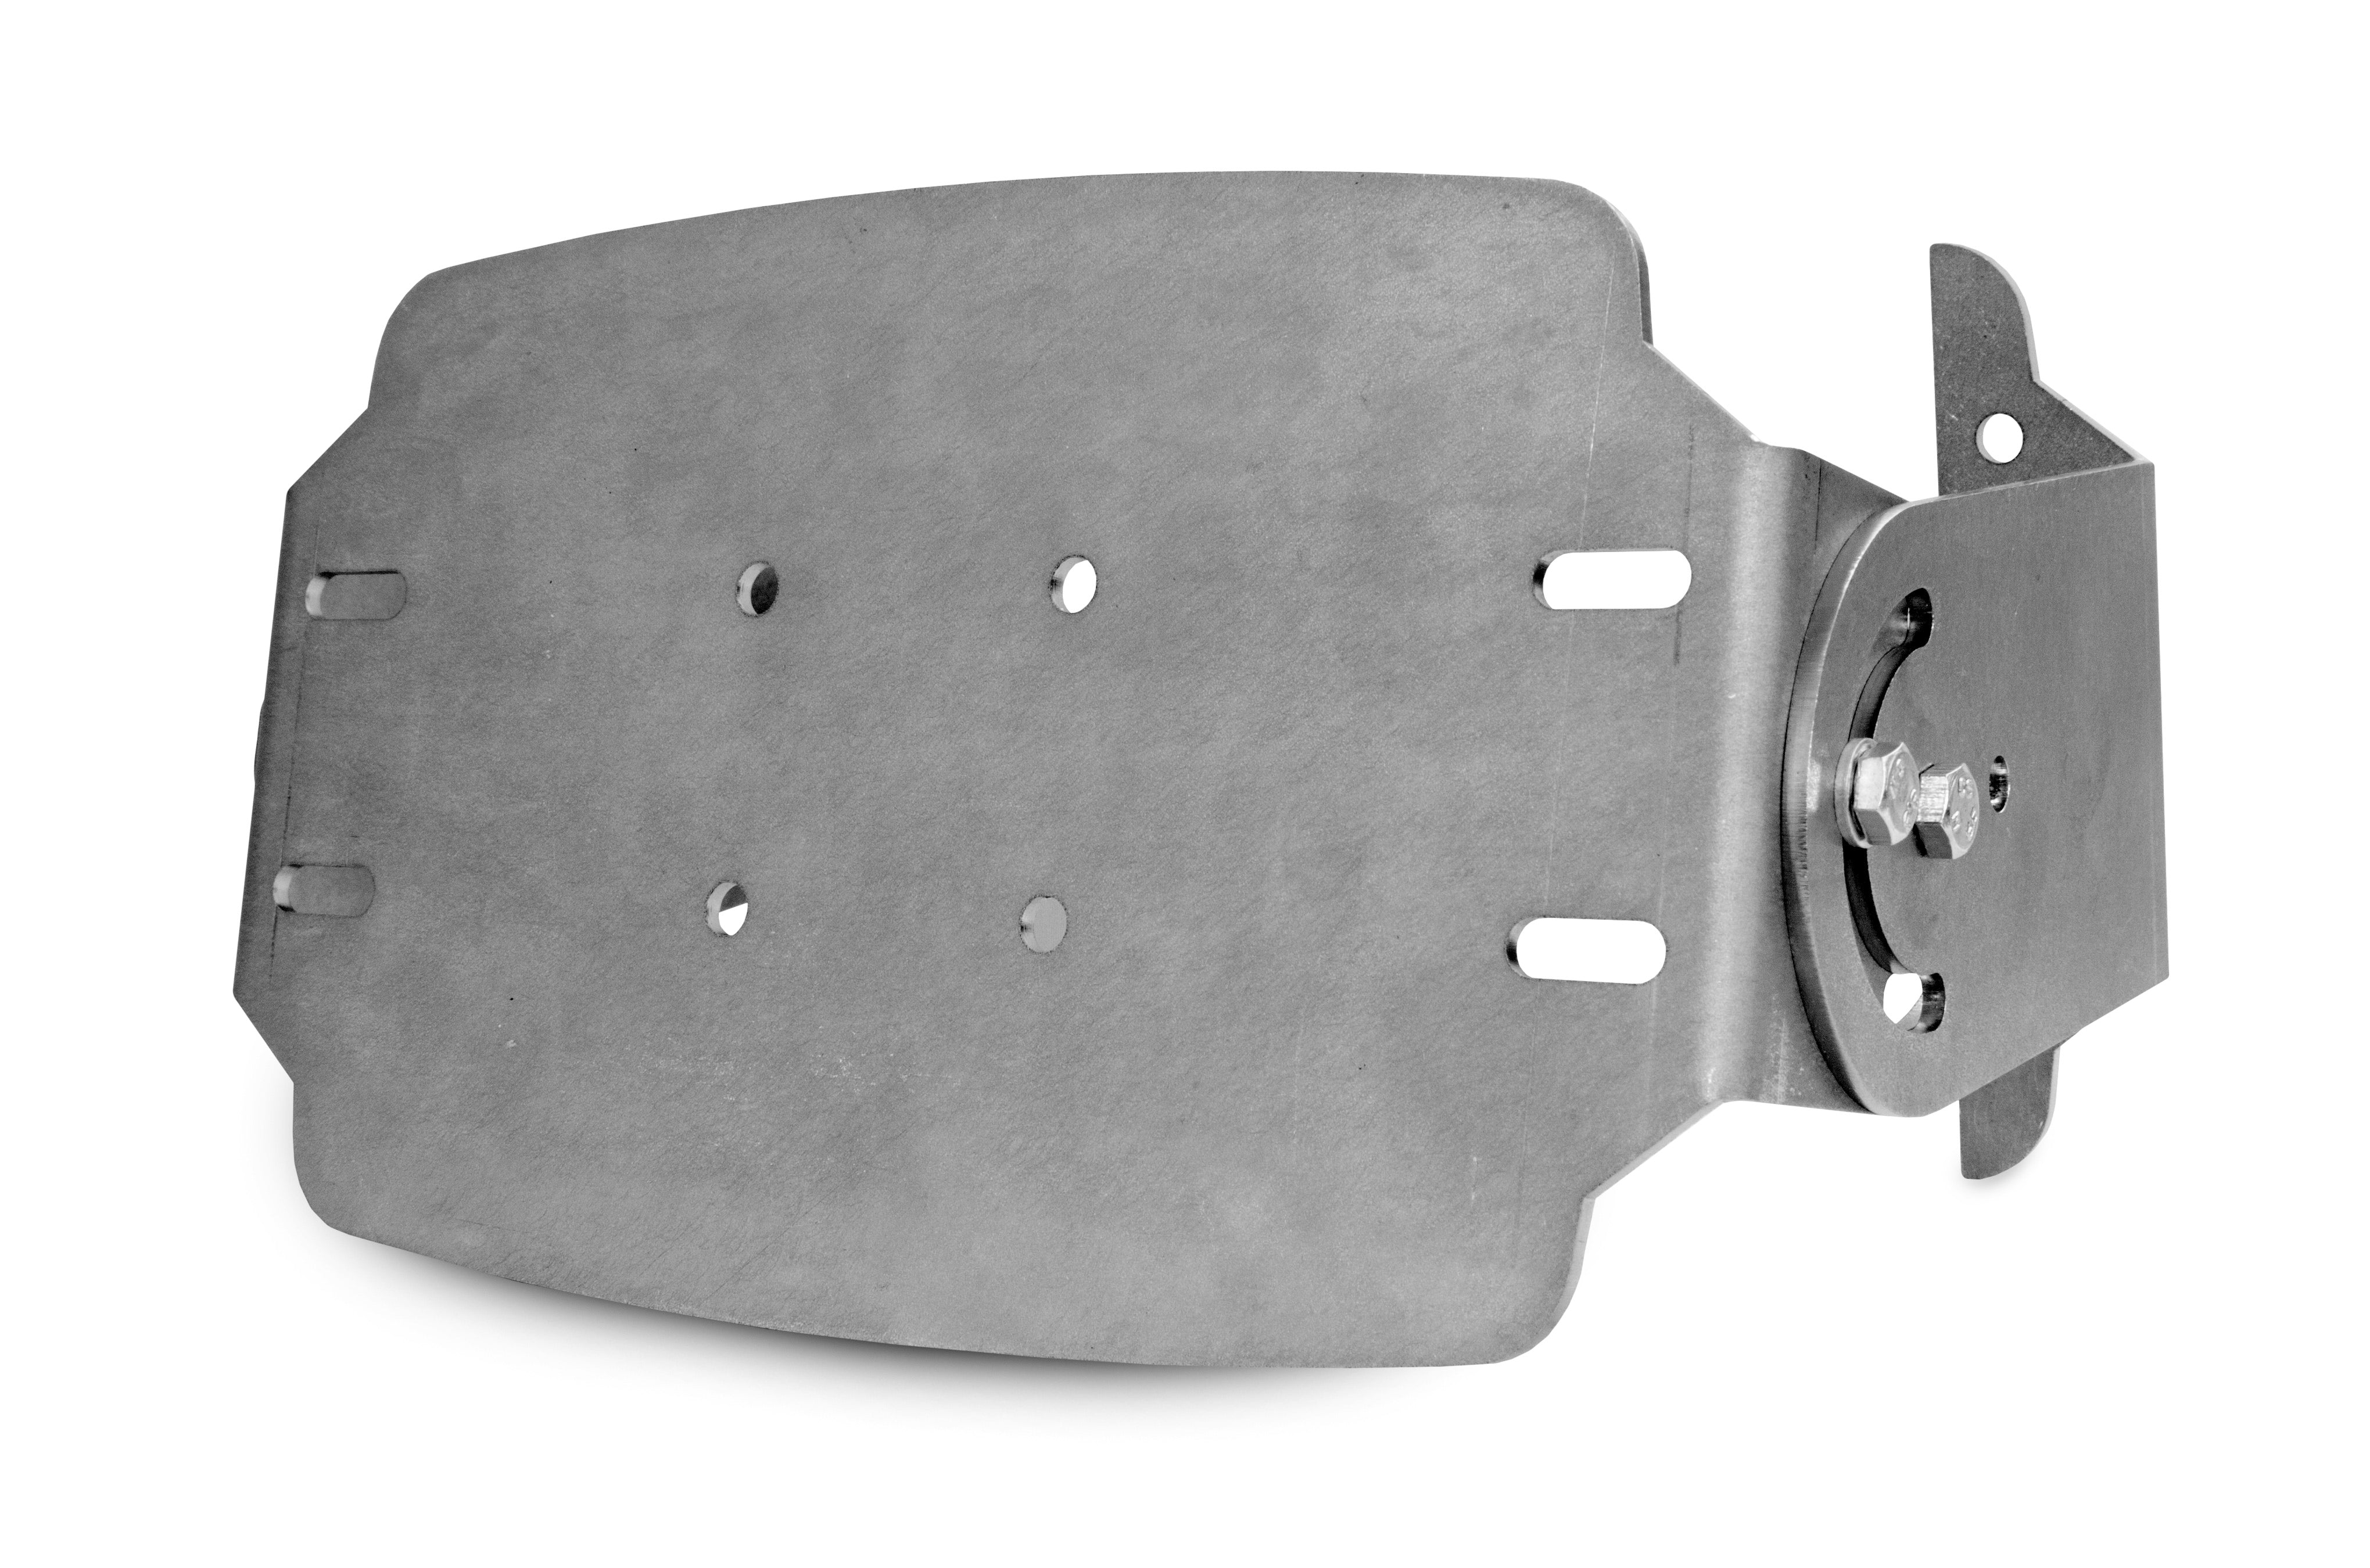 Adjustable radar bracket for backsense radar object detection system